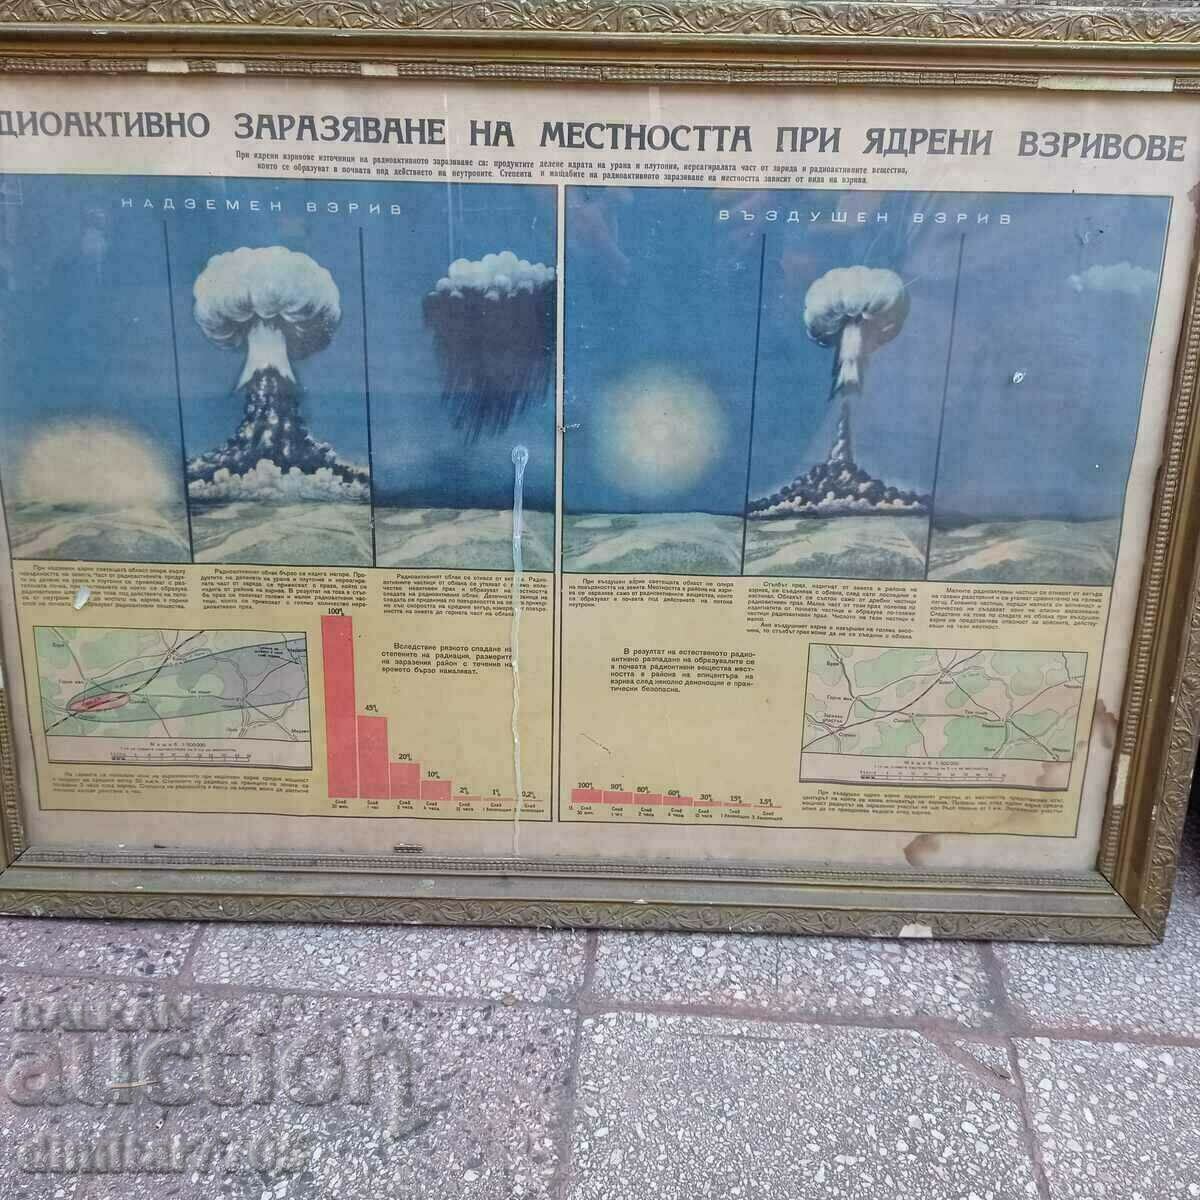 Contaminarea radioactivă a zonei în timpul exploziilor nucleare